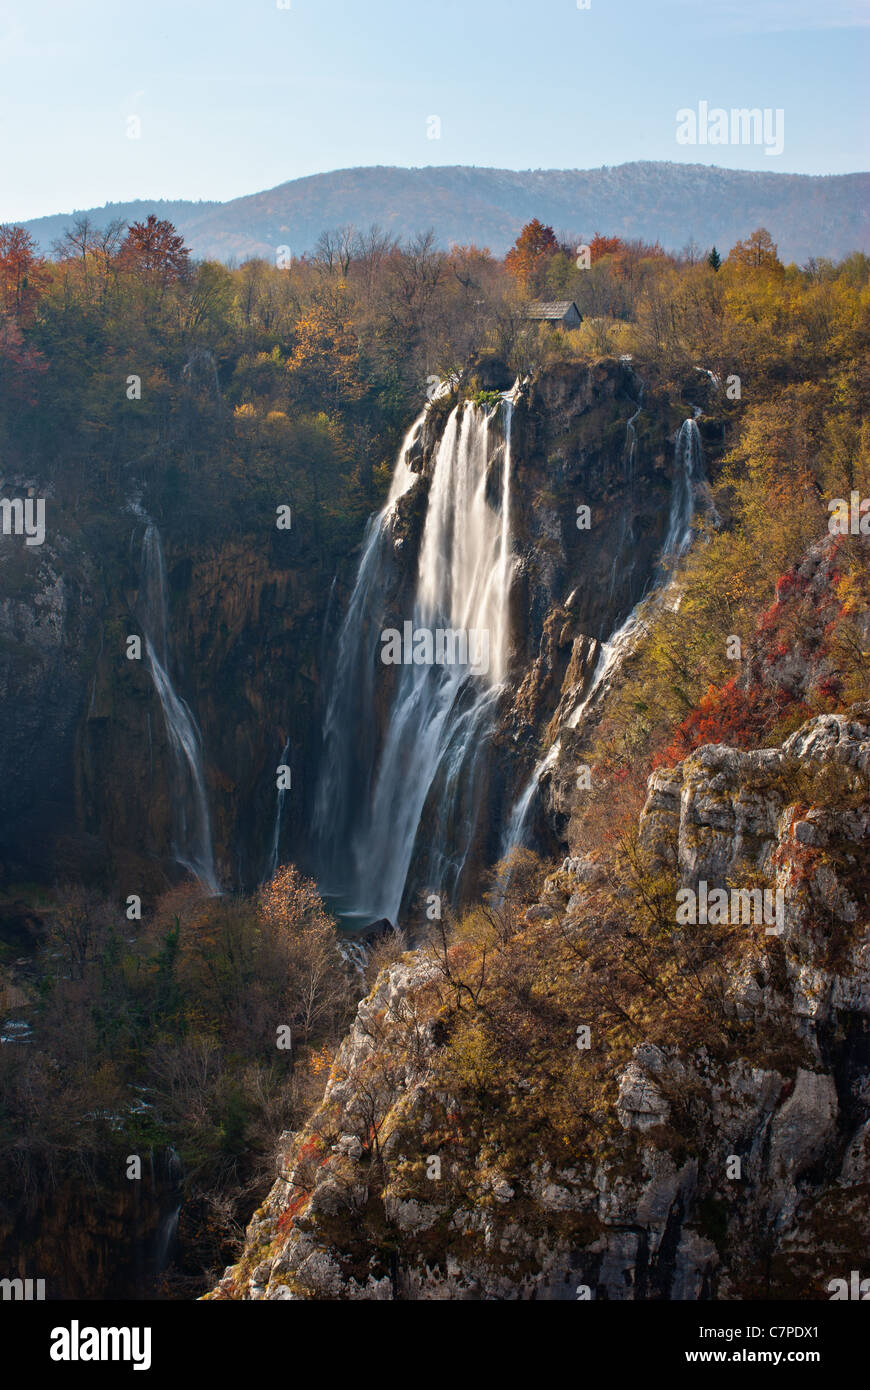 Le plus beau et le plus célèbre parc national en Croatie. Des lacs de Plitvice. Les photos prises à l'automne. Banque D'Images